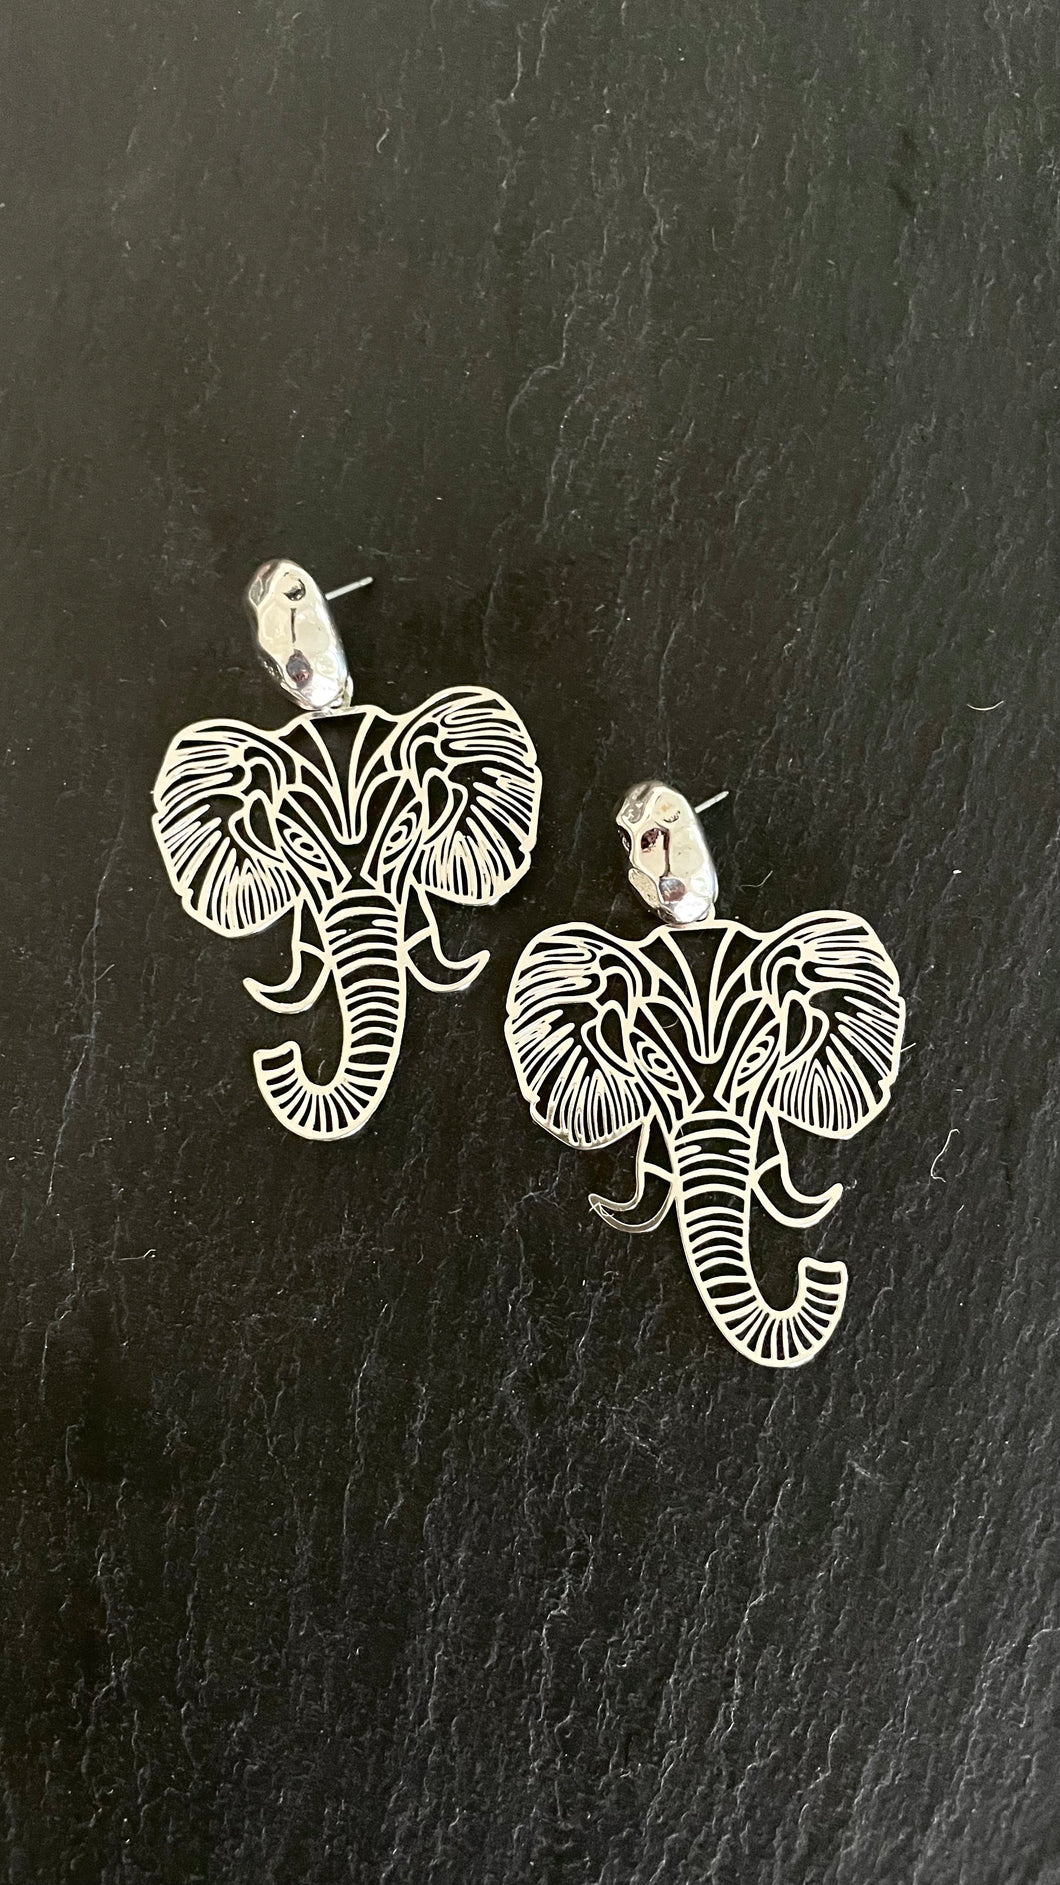 The Metallic Elephant Earrings